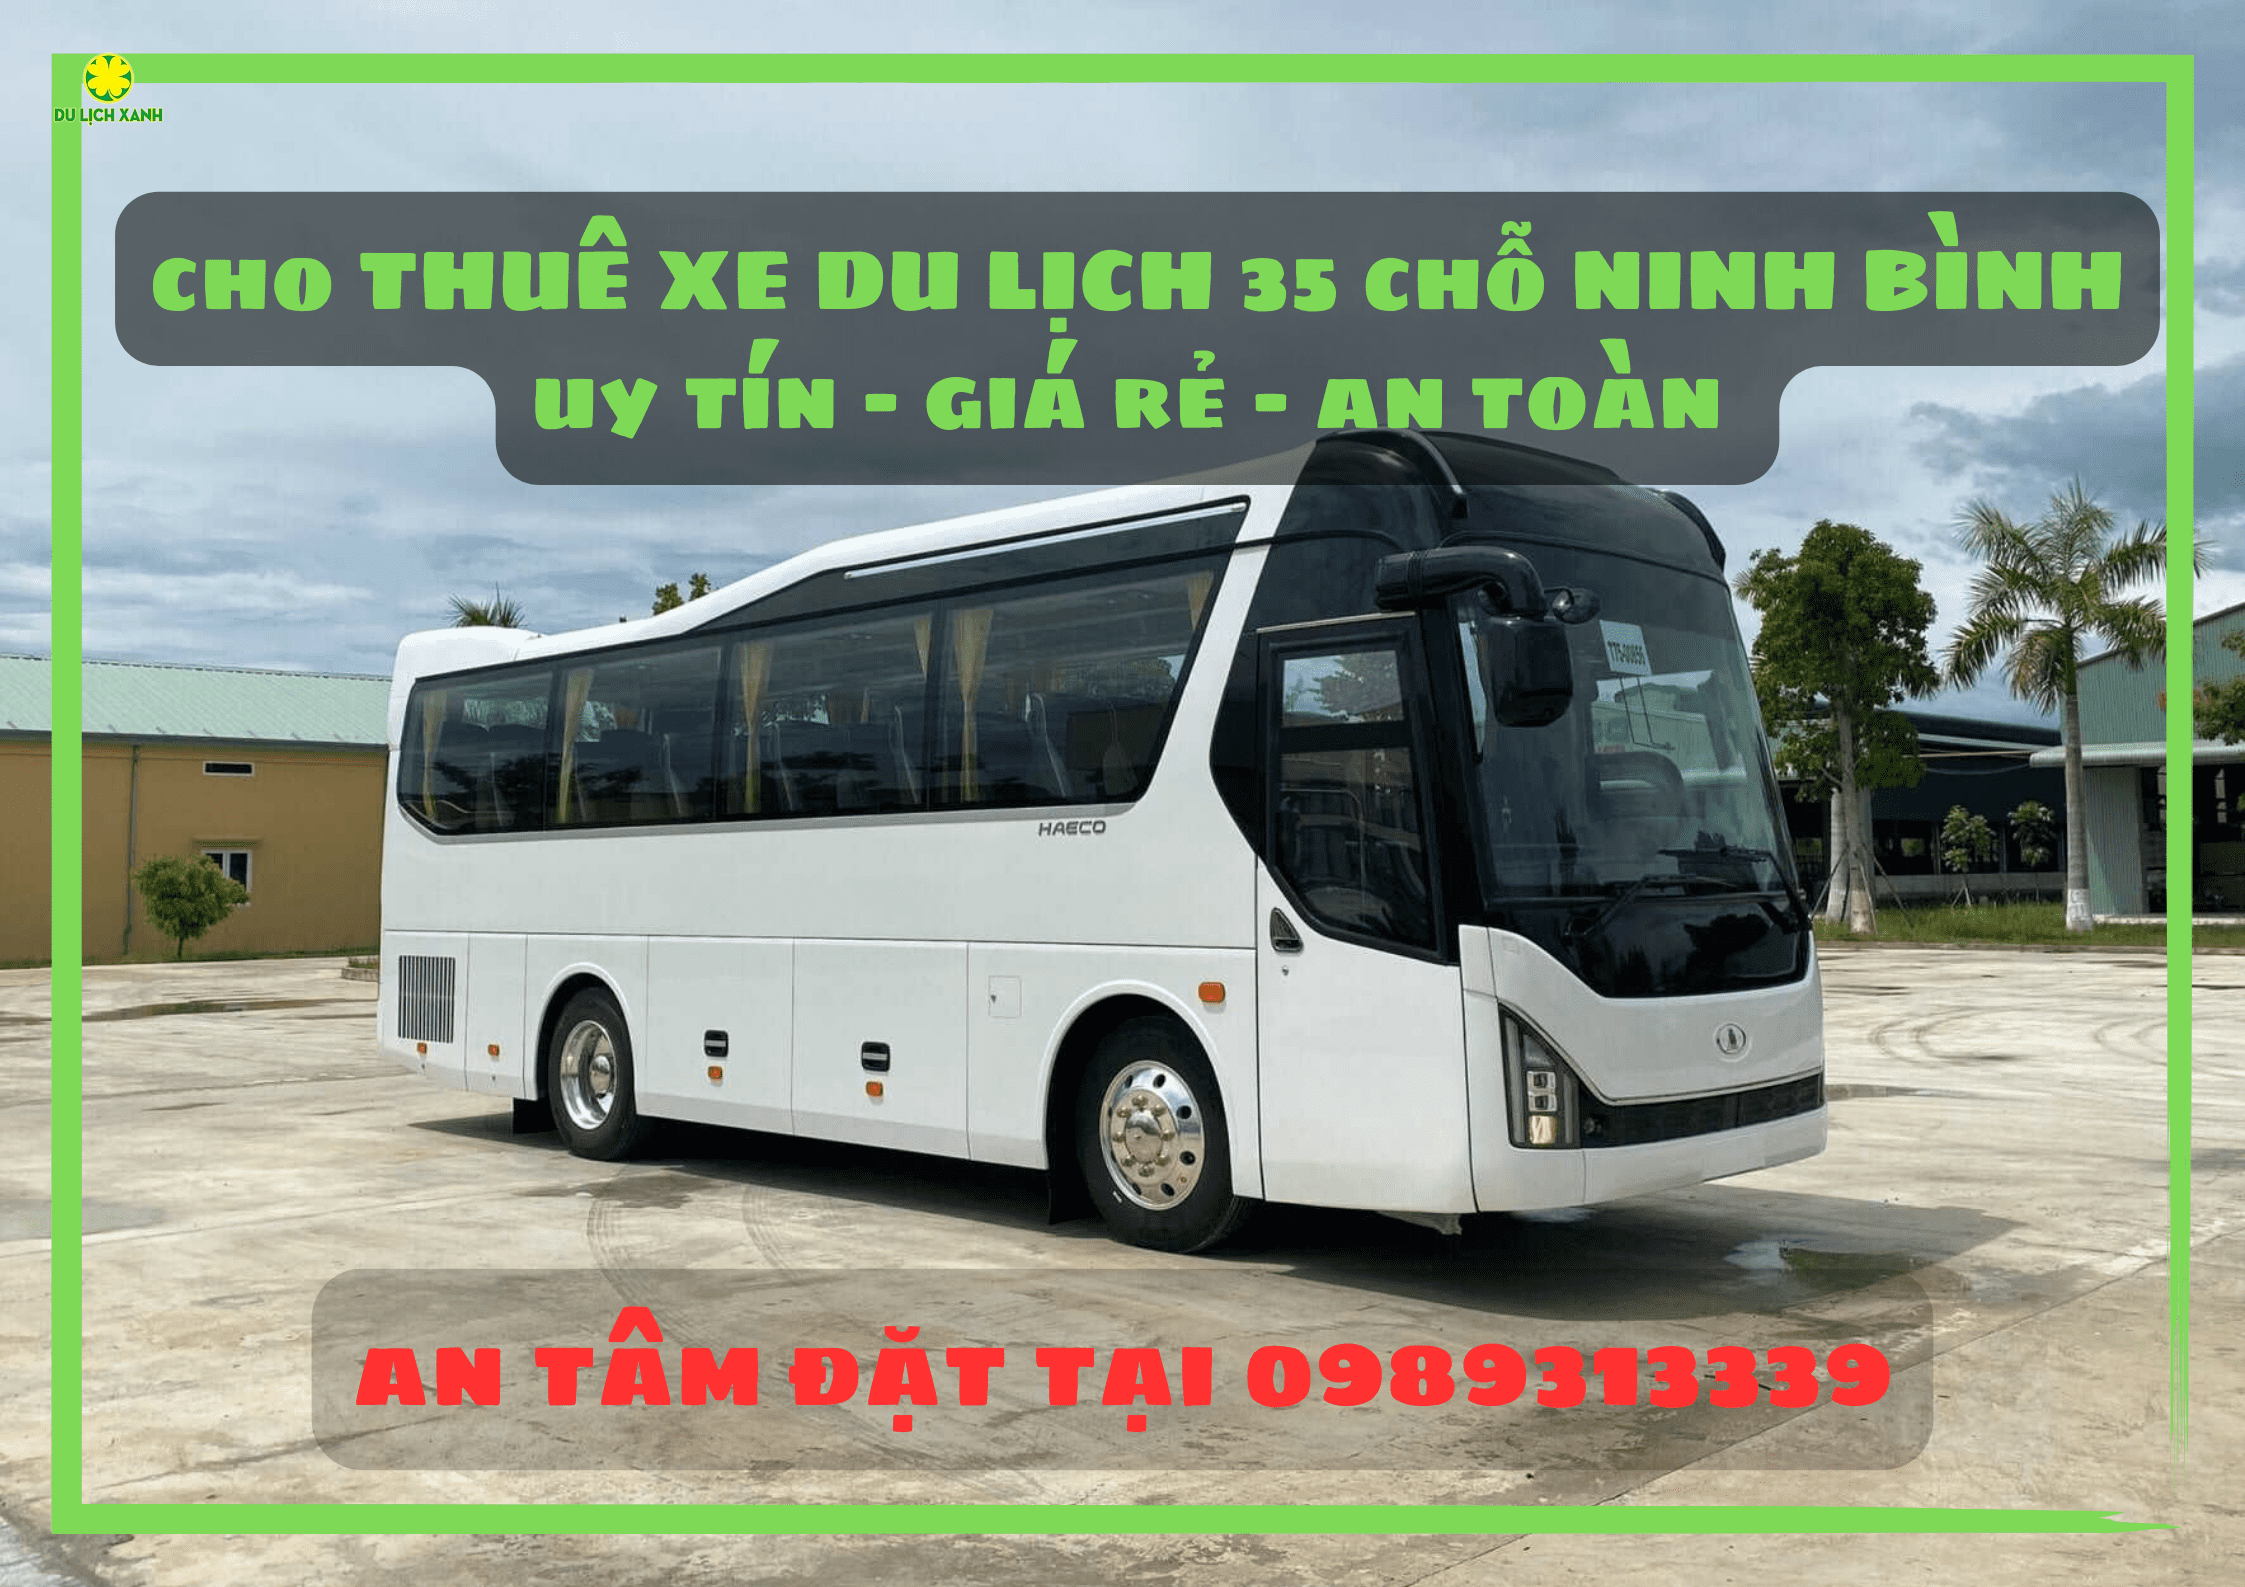 Cho thuê xe du lịch 35 chỗ tại Ninh Bình